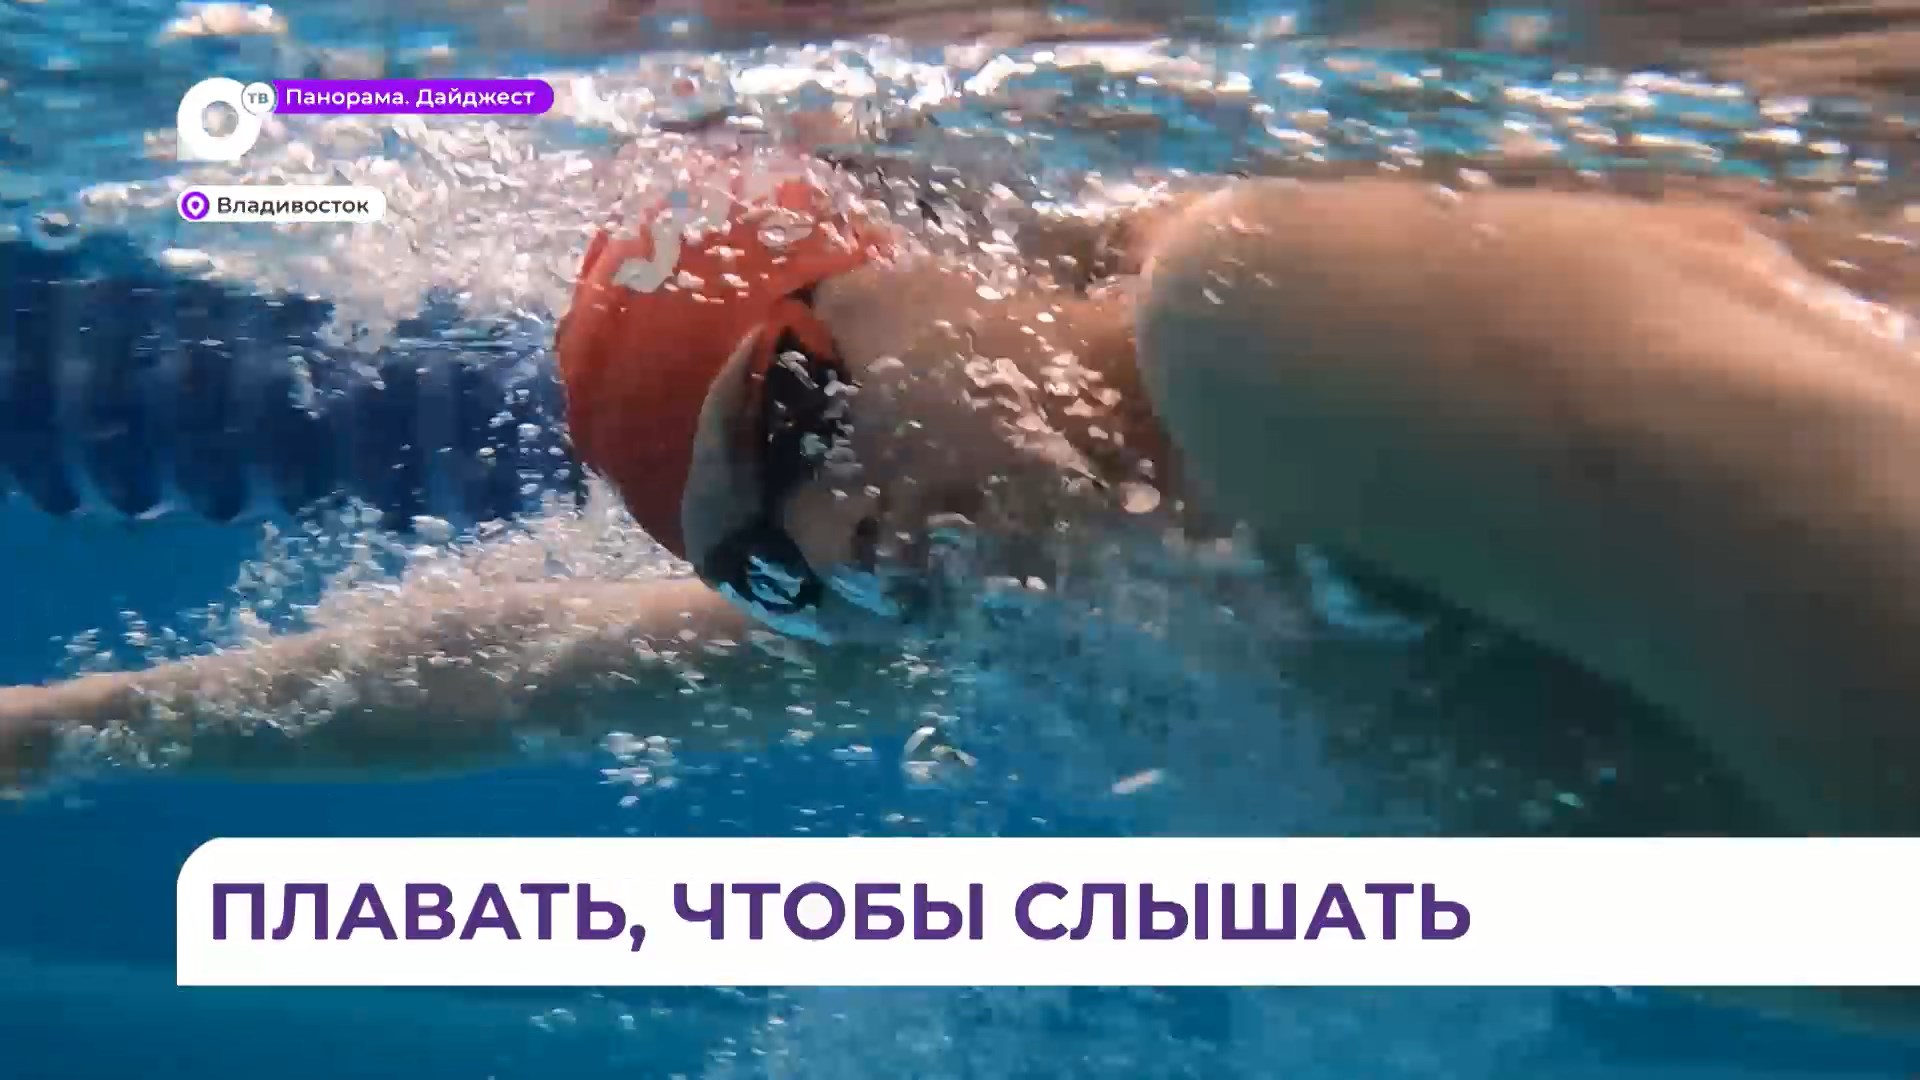 Юный талантливый пловец из Приморья мечтает победить Сурдлимпийских играх